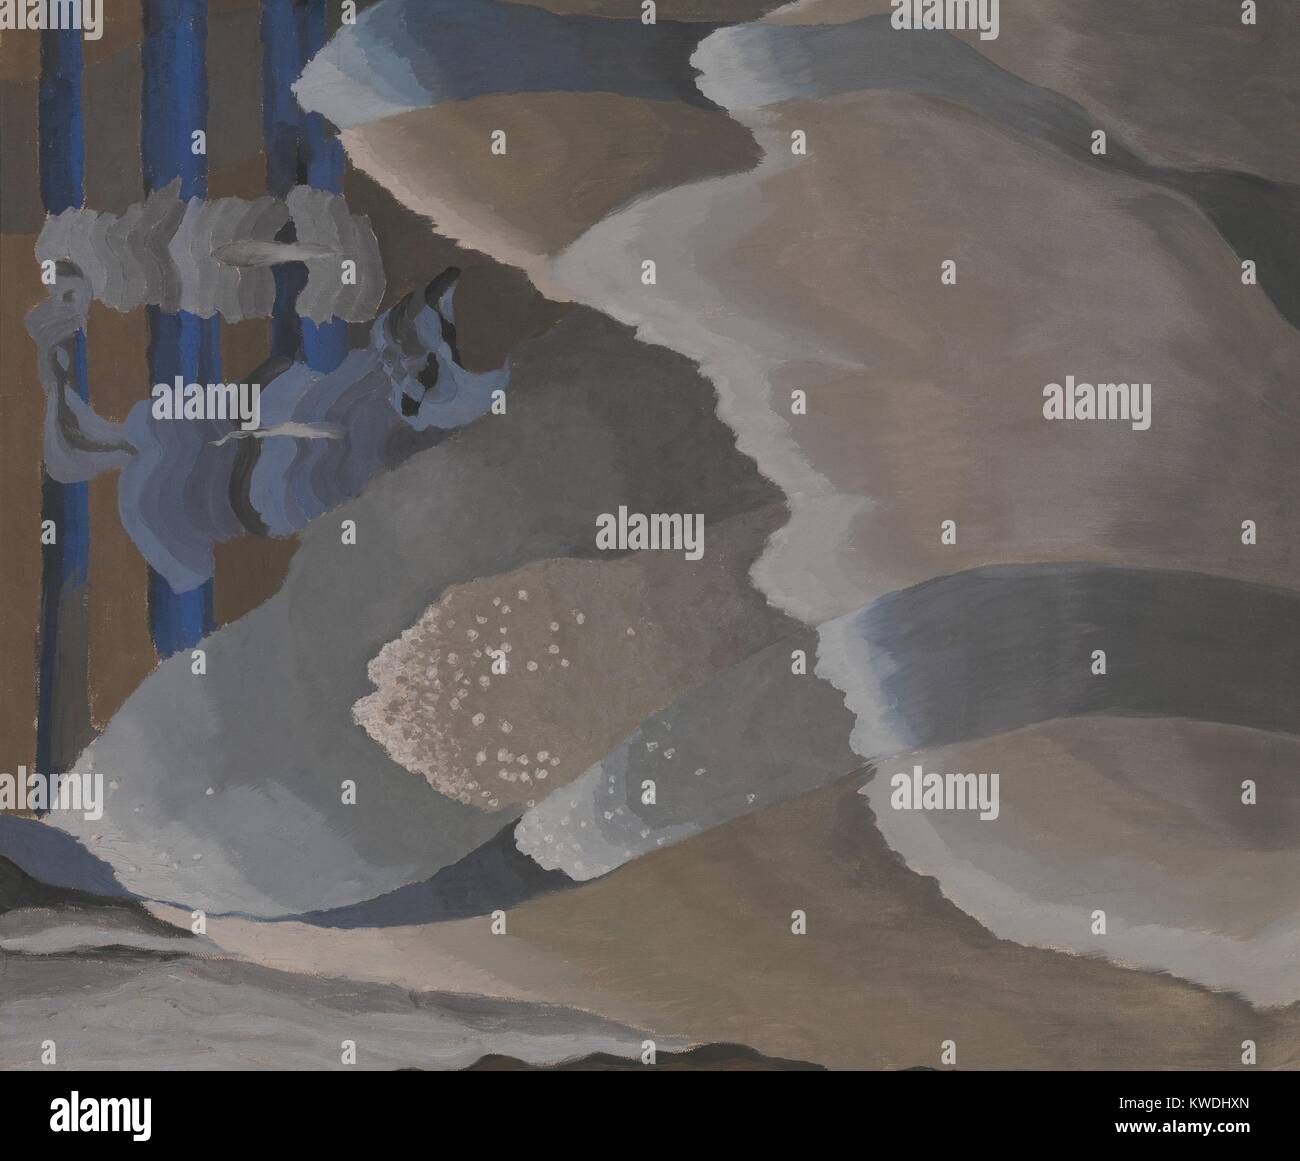 Die Wellen, die von Arthur Dove, 1929, Amerikanische Malerei, Öl und Aluminium Farbe auf Leinwand. Wellen, vorgestellt von oben, Flut ans Ufer über vertikale Balken, die die Kanten des Meeresbodens zu evozieren (BSLOC 2017 7 82) Stockfoto